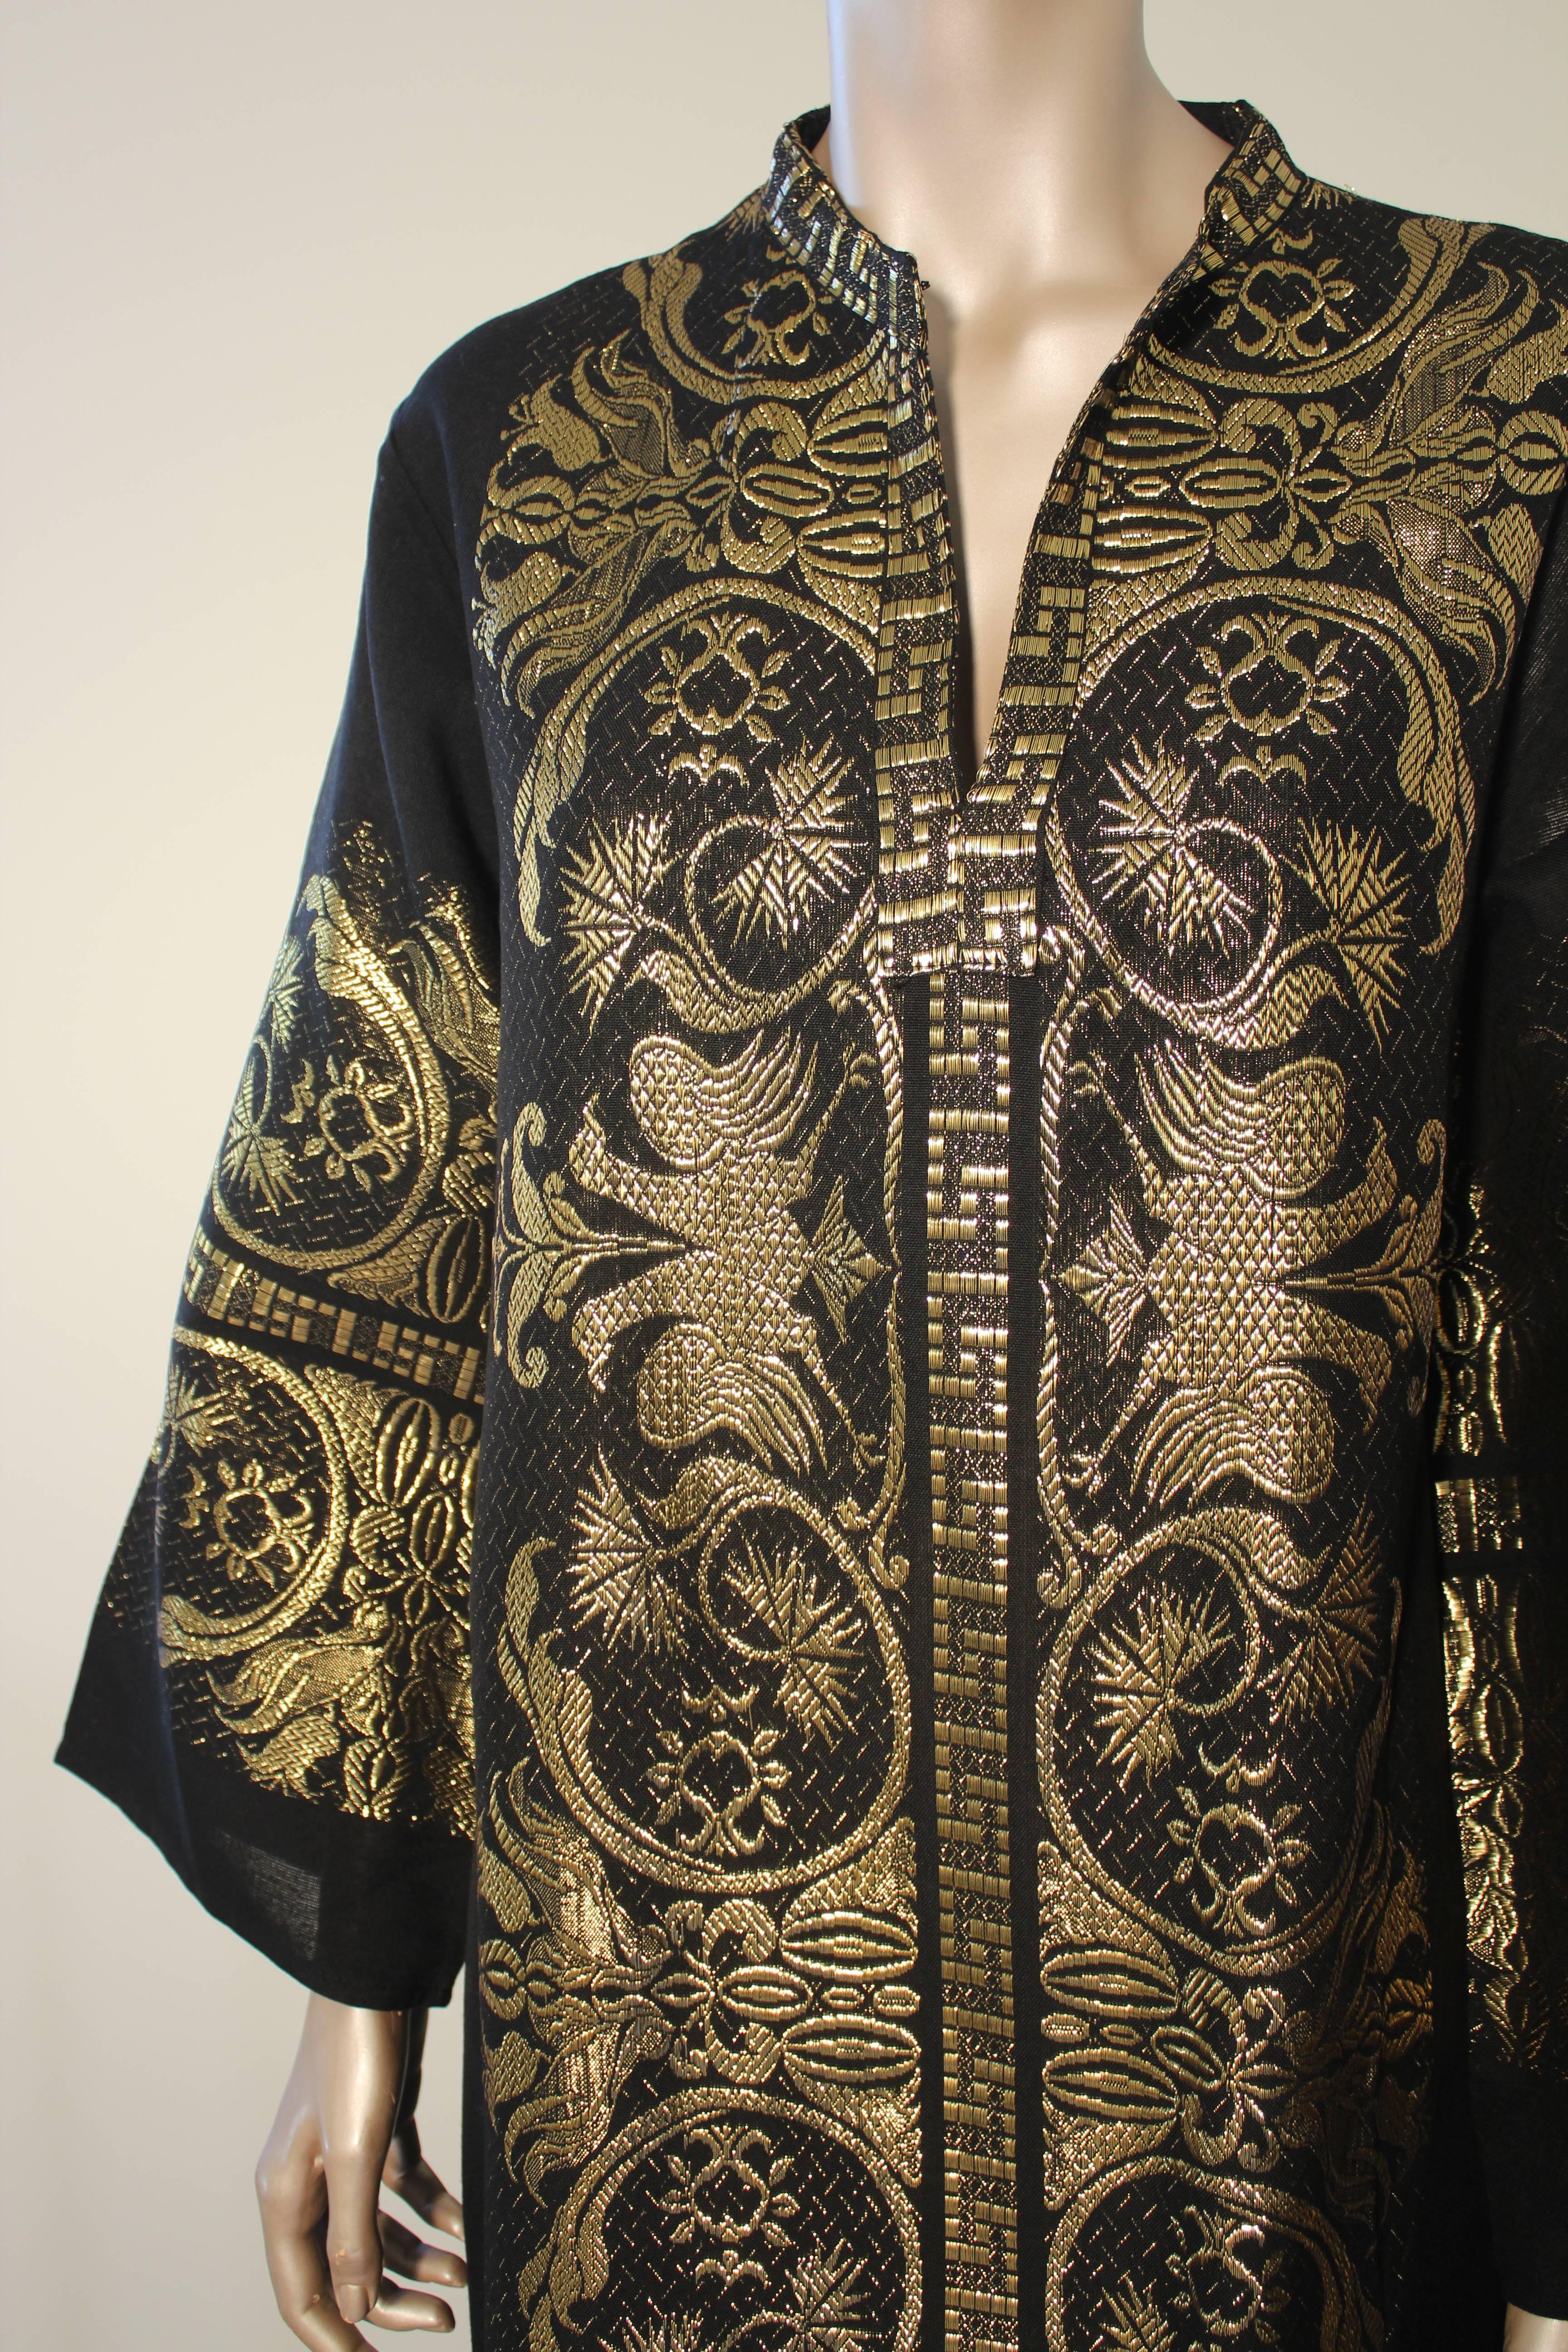 Bohemian Caftan Black and Gold, 1970s, Maxi Dress Greek Kaftan Size M to L